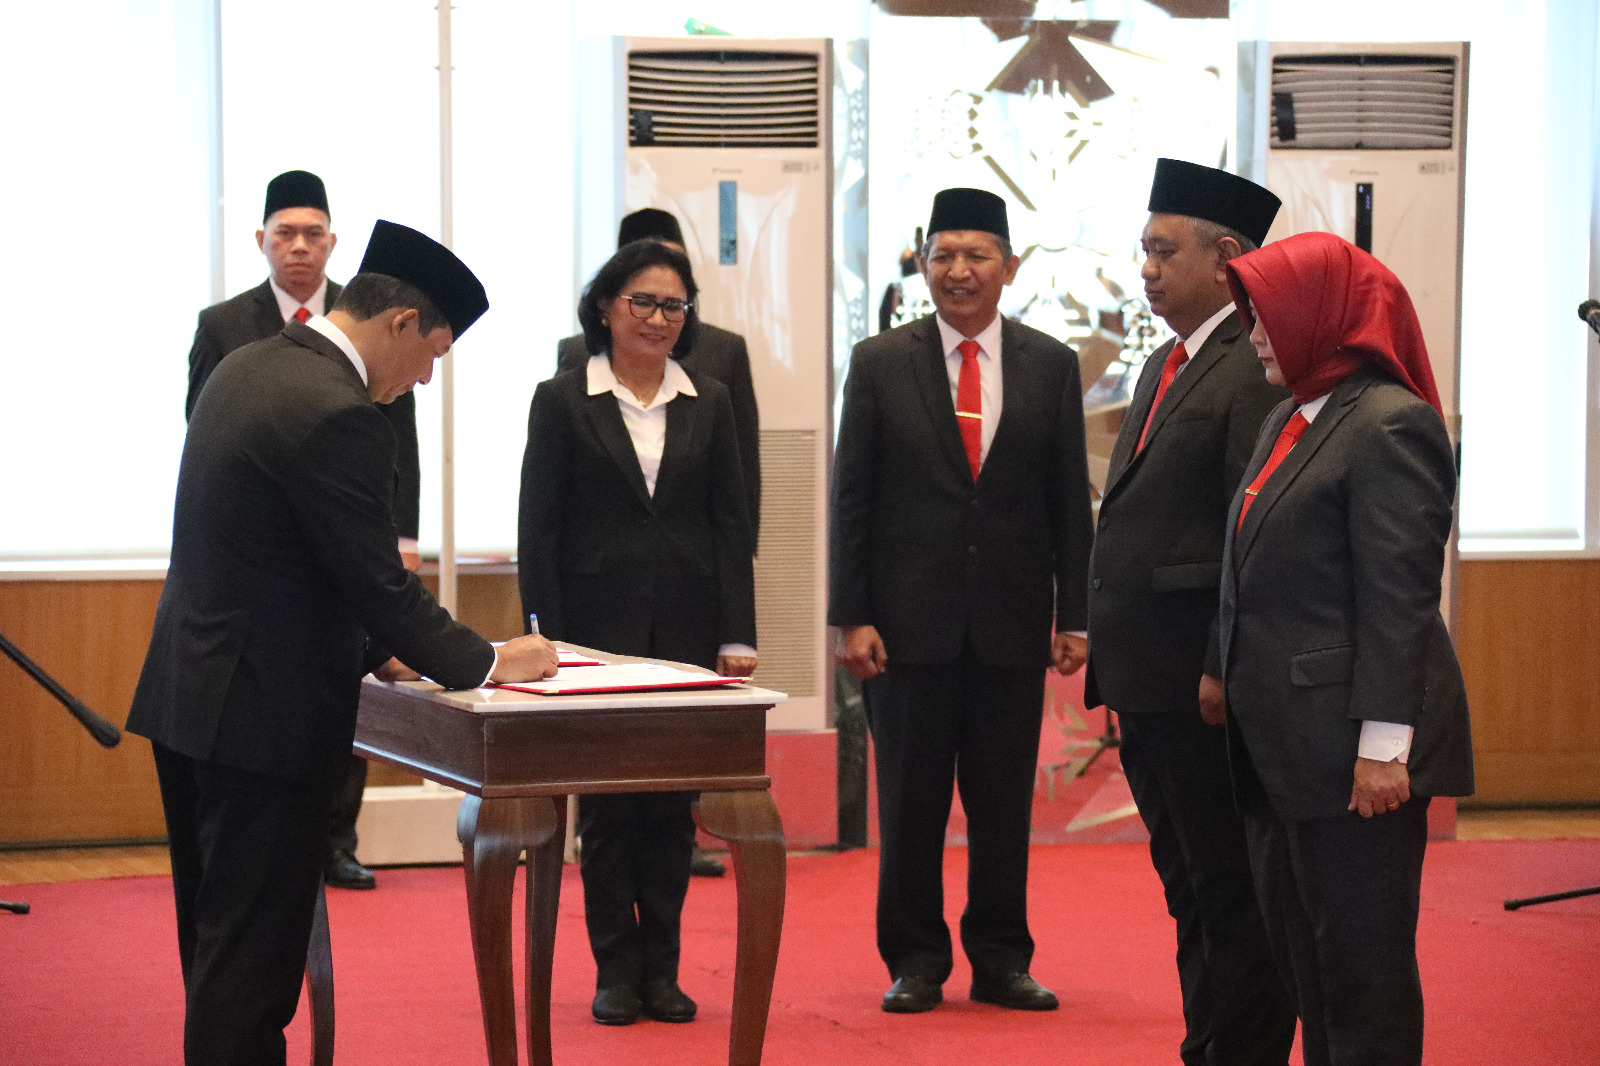 Kepala BNPB Letjen TNI Suharyanto menandatangani dokumen pelantikan Pejabat Pimpinan Tinggi Madya dan Pimpinan Tinggi Pratama di Graha BNPB, Jakarta pada Selasa (21/3)